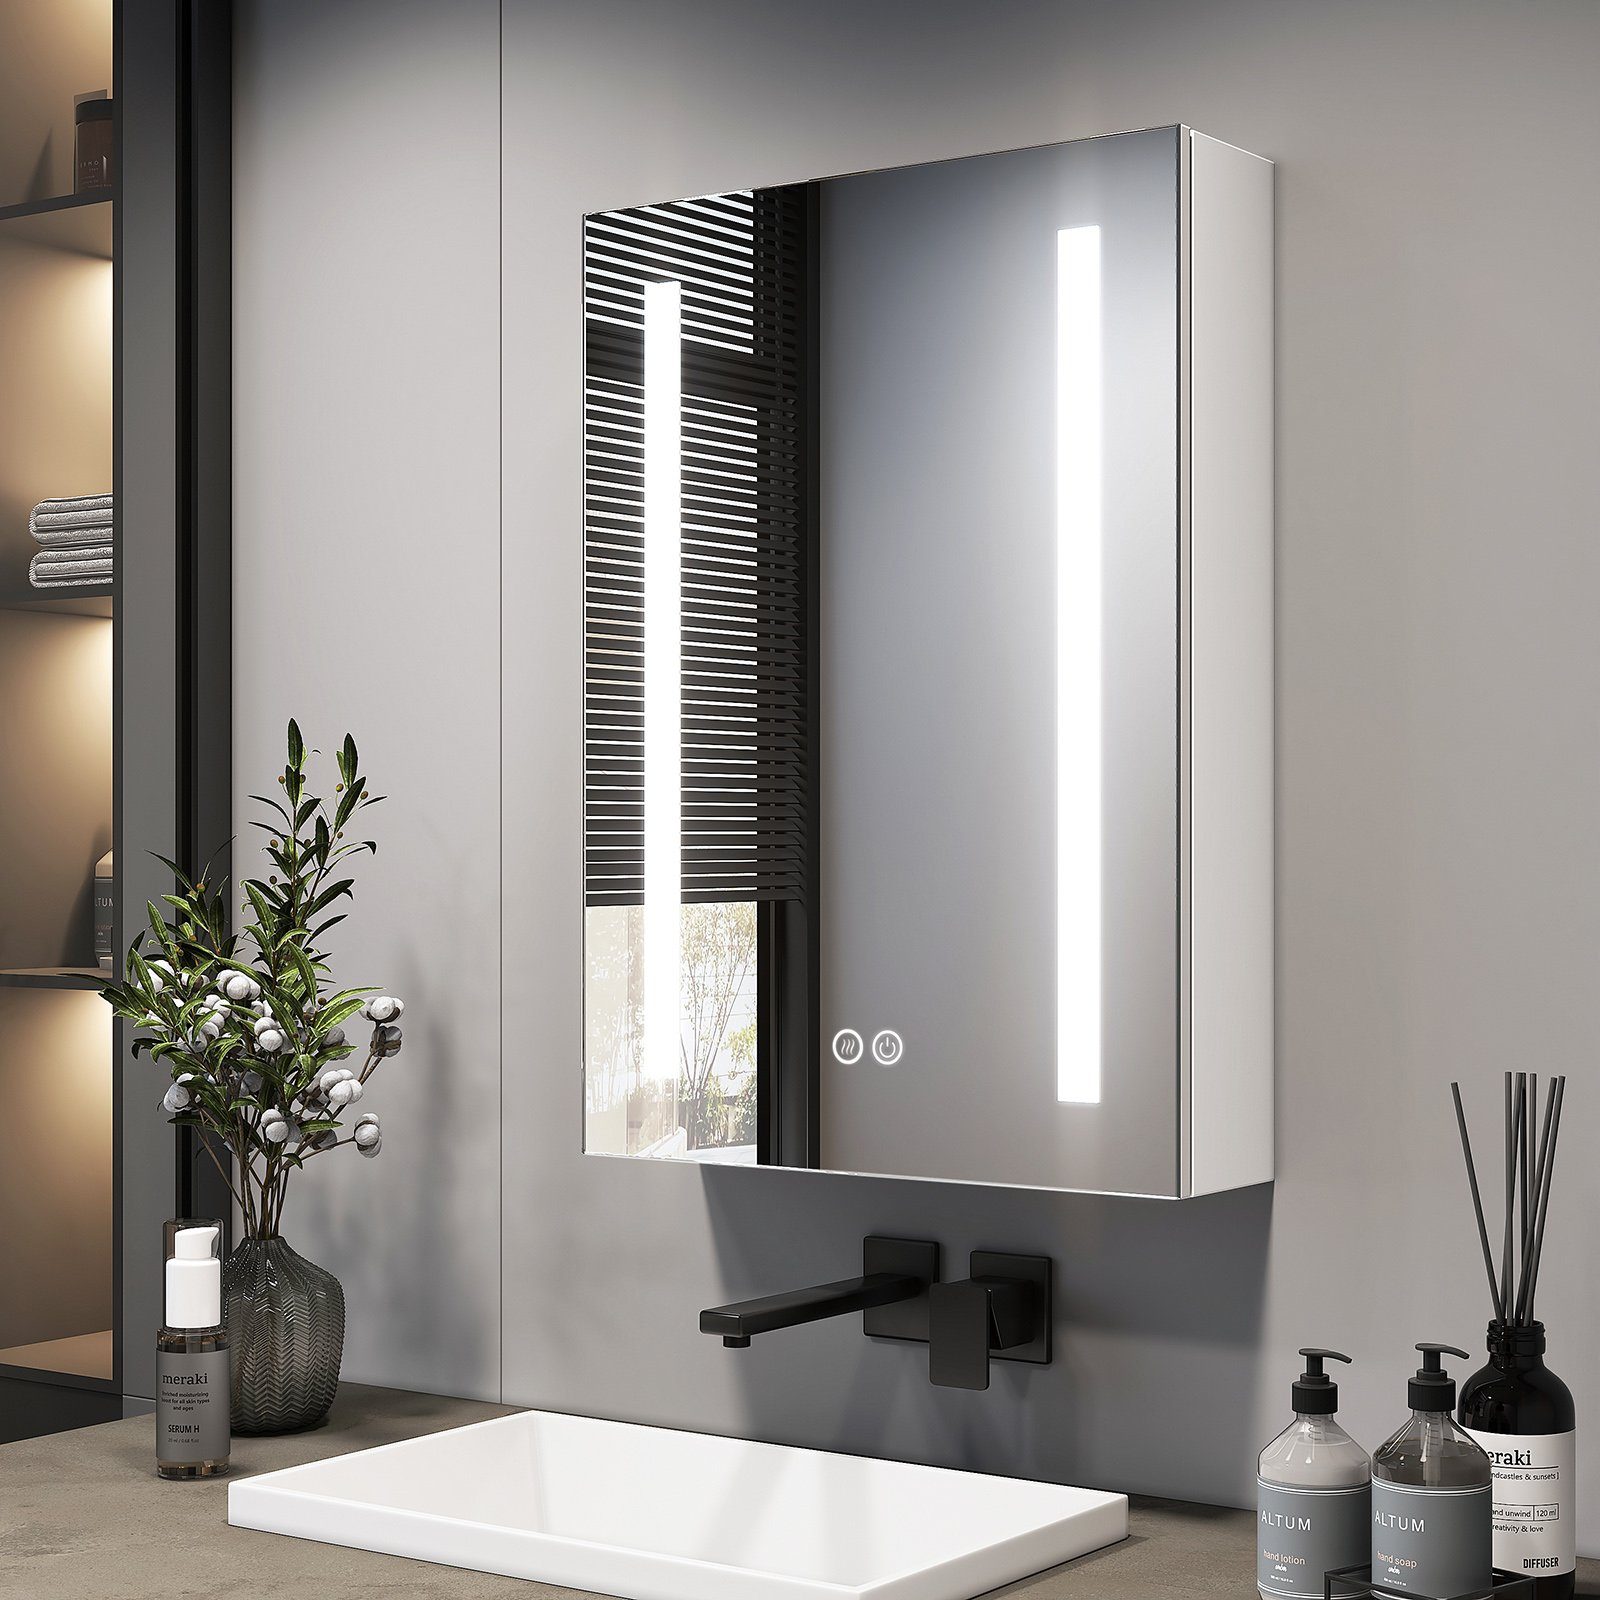 EMKE Badspiegel Spiegelschrank Bad mit LED Beleuchtung Beschlagfrei Lichtspigel (1 türig), mit Ablage,Touchschalter,3 Lichtfarben,Steckdose und USB Anschlüsse